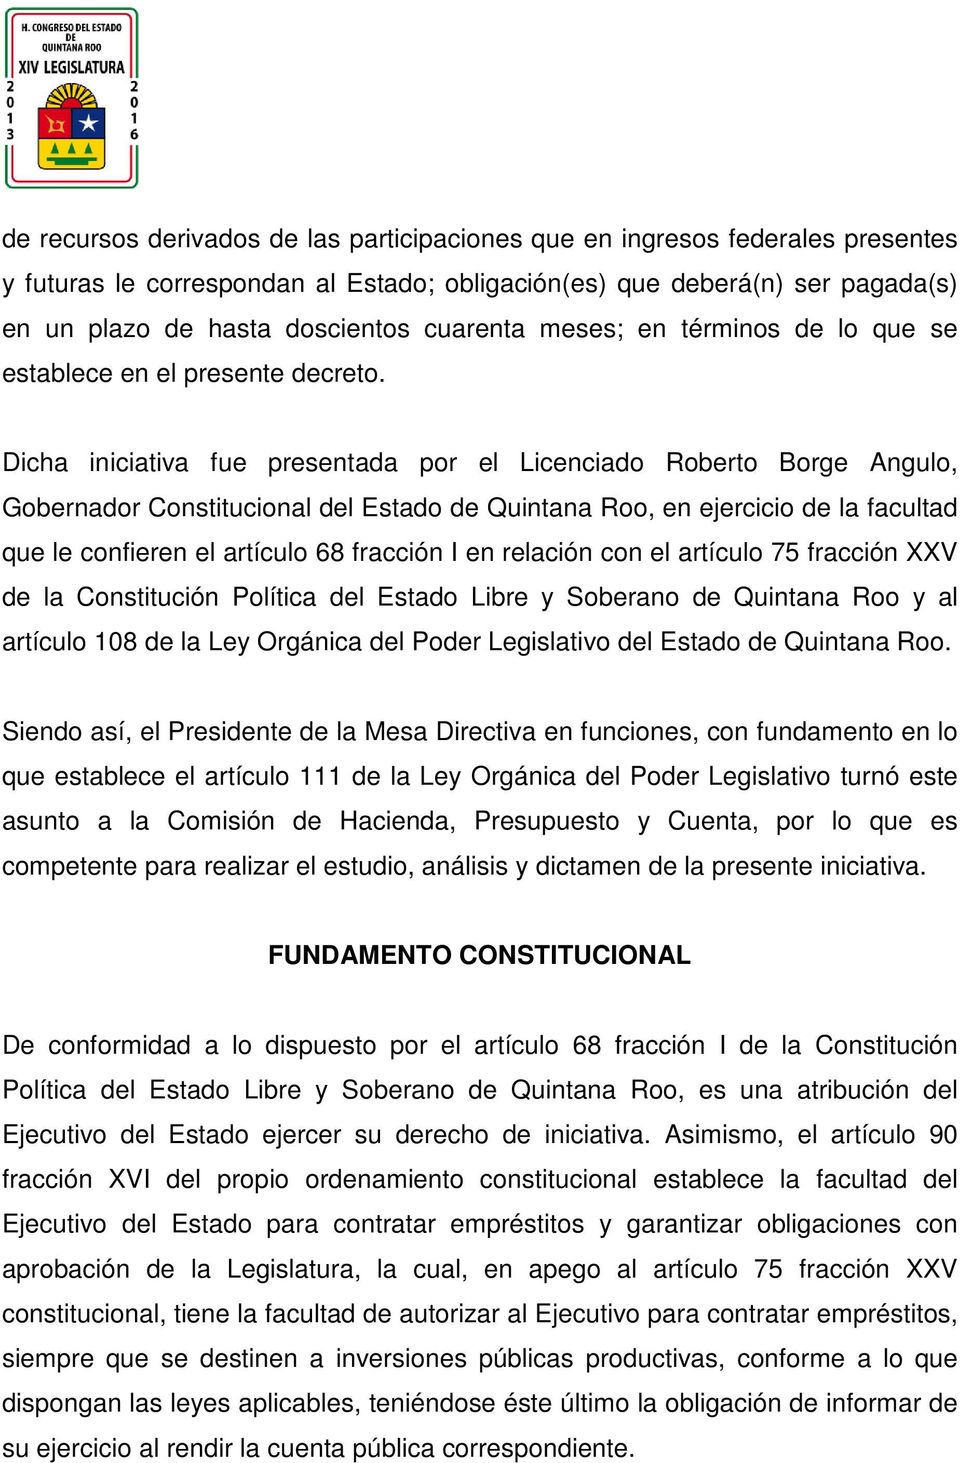 Dicha iniciativa fue presentada por el Licenciado Roberto Borge Angulo, Gobernador Constitucional del Estado de Quintana Roo, en ejercicio de la facultad que le confieren el artículo 68 fracción I en